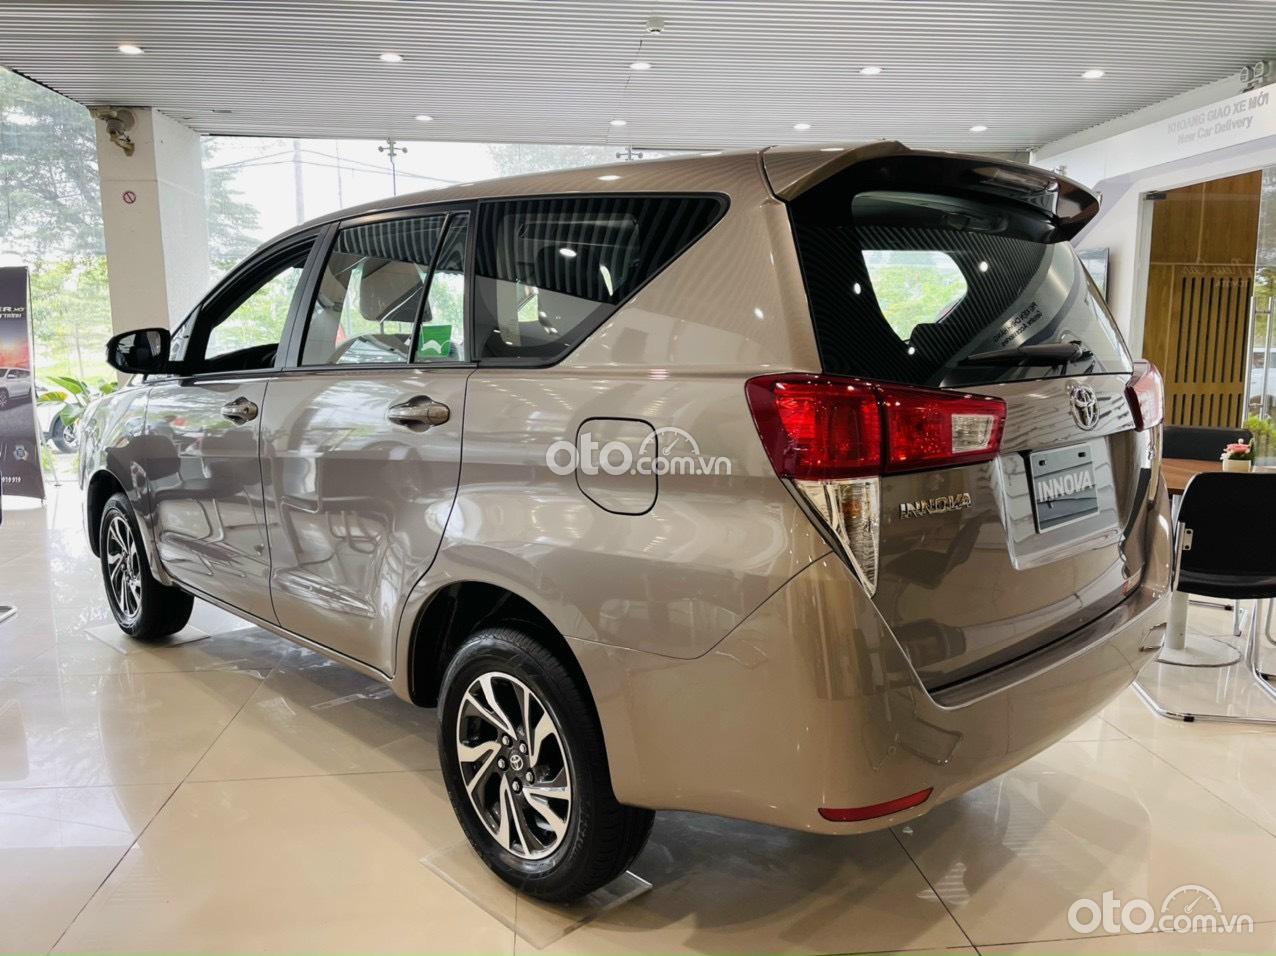 Toyota Innova E MT trả góp chỉ 180 triệu, khuyến mãi chưa từng có, trả góp lên đến 90%, giao xe tận nhà